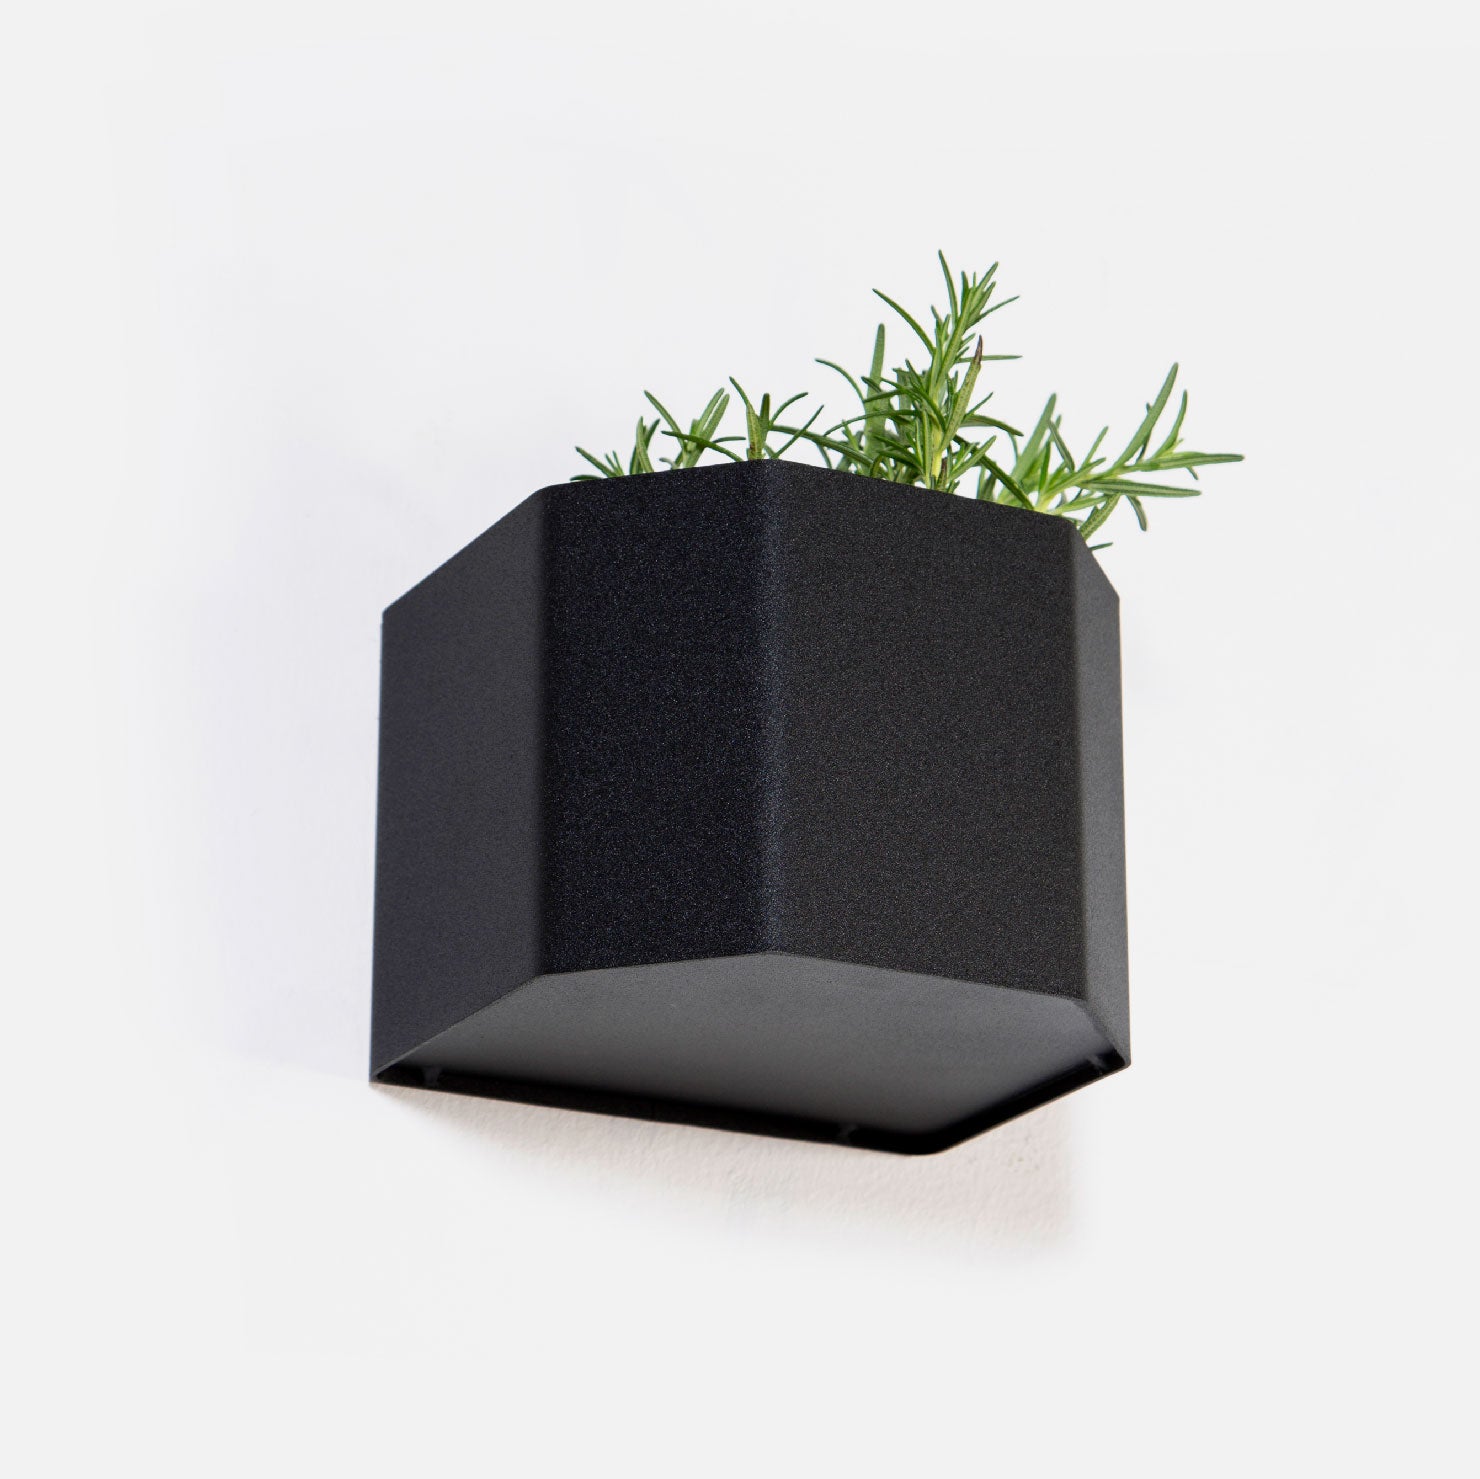 Herb Box Mini - Black